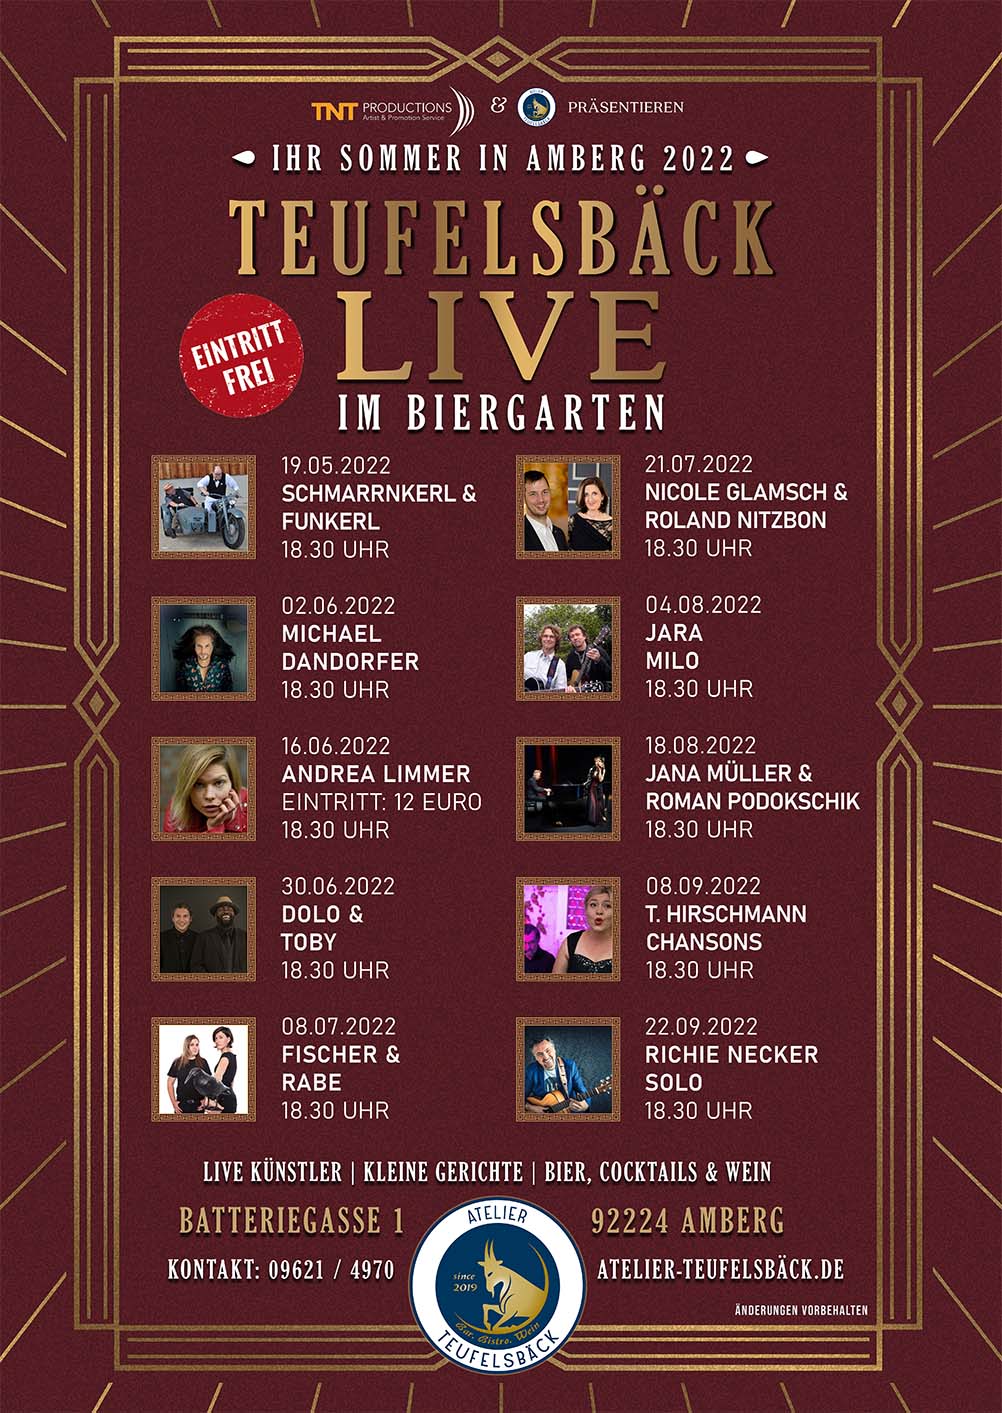 The poster for Teufelsbäck LIVE 2022